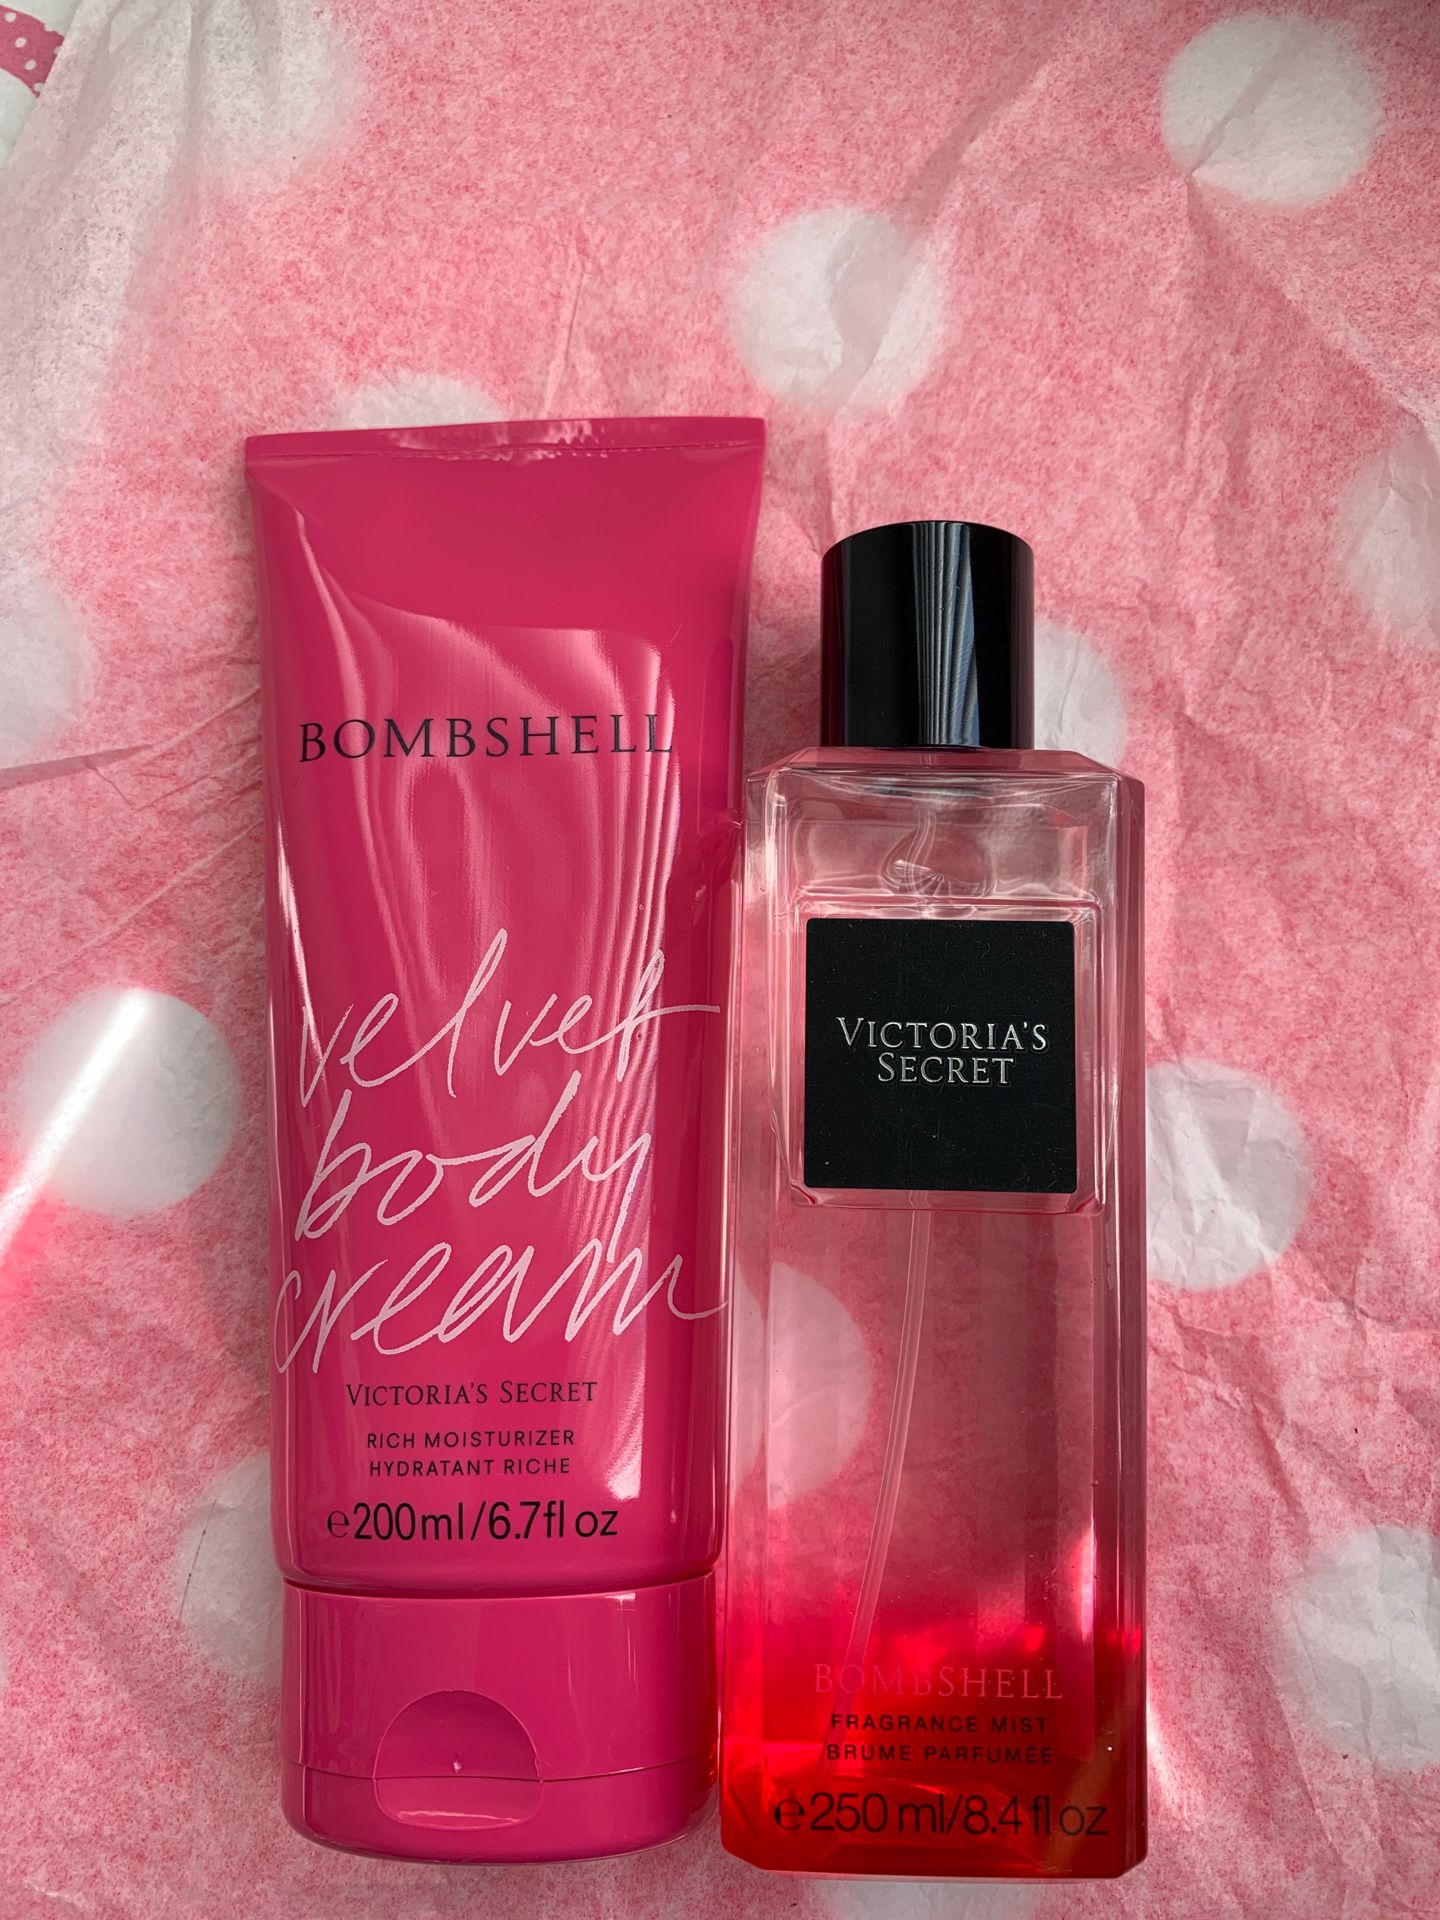 Victoria’s Secret bombshell fragrance mist and body cream set for $20